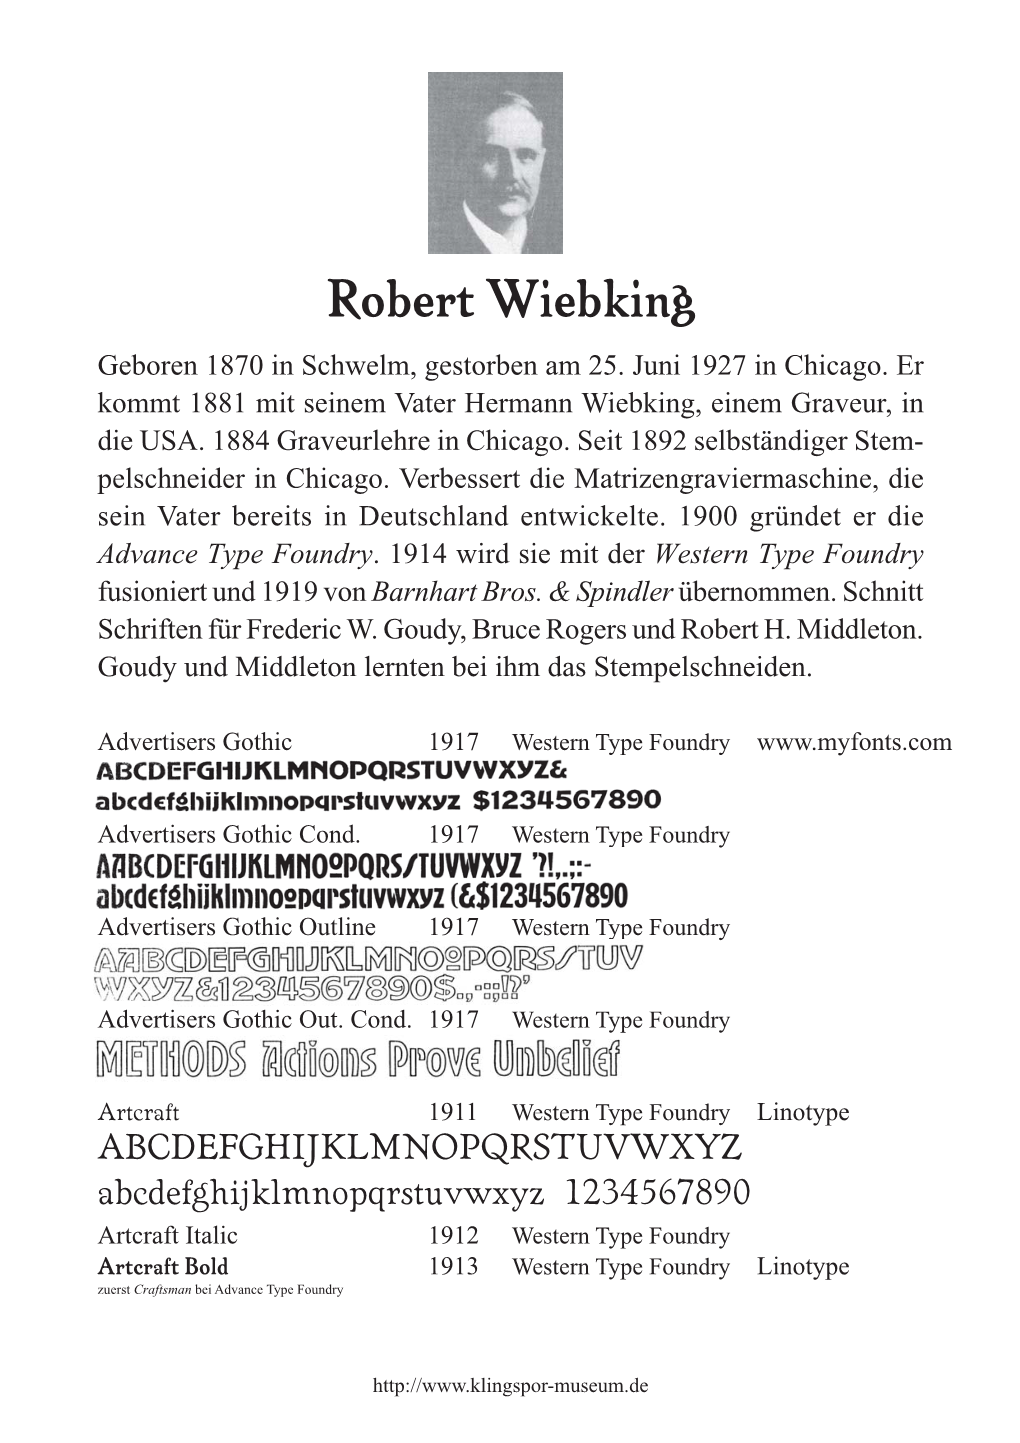 Robert Wiebking Geboren 1870 in Schwelm, Gestorben Am 25